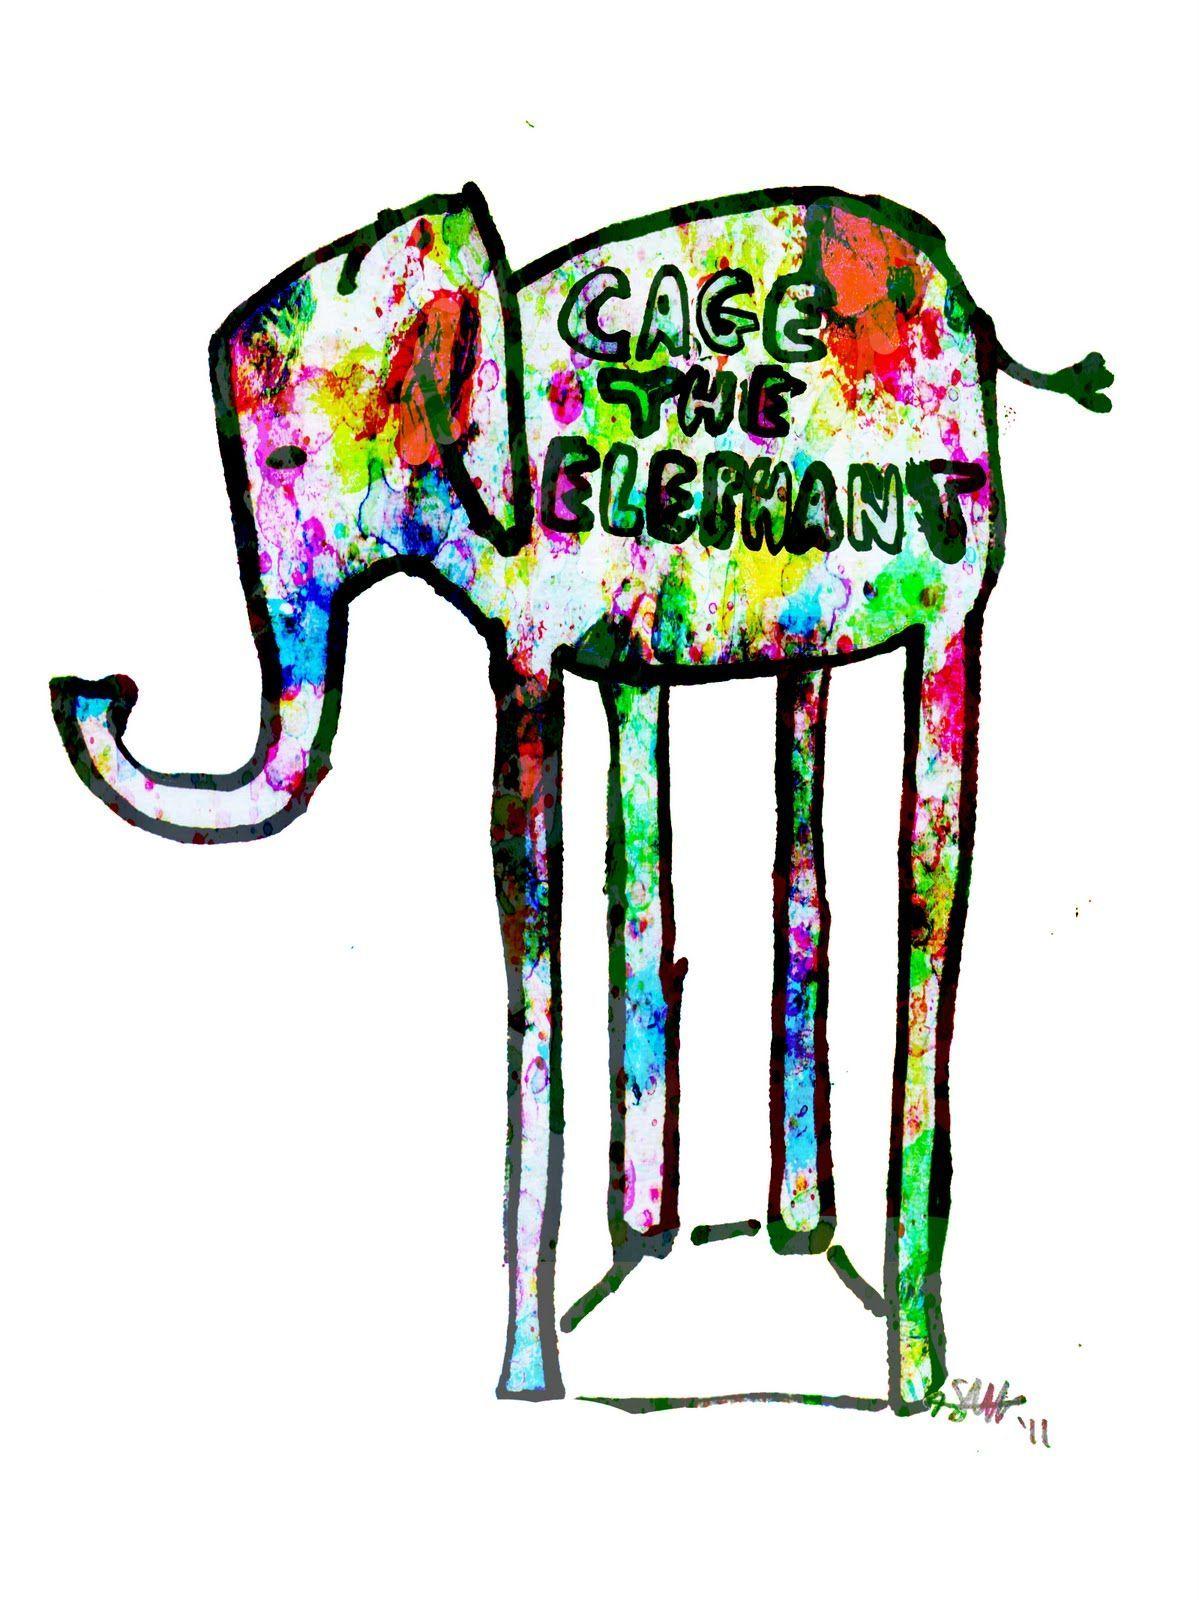 Cage The Elephant Logo - Cage the Elephant. mixtape. Elephant, Cage, Music